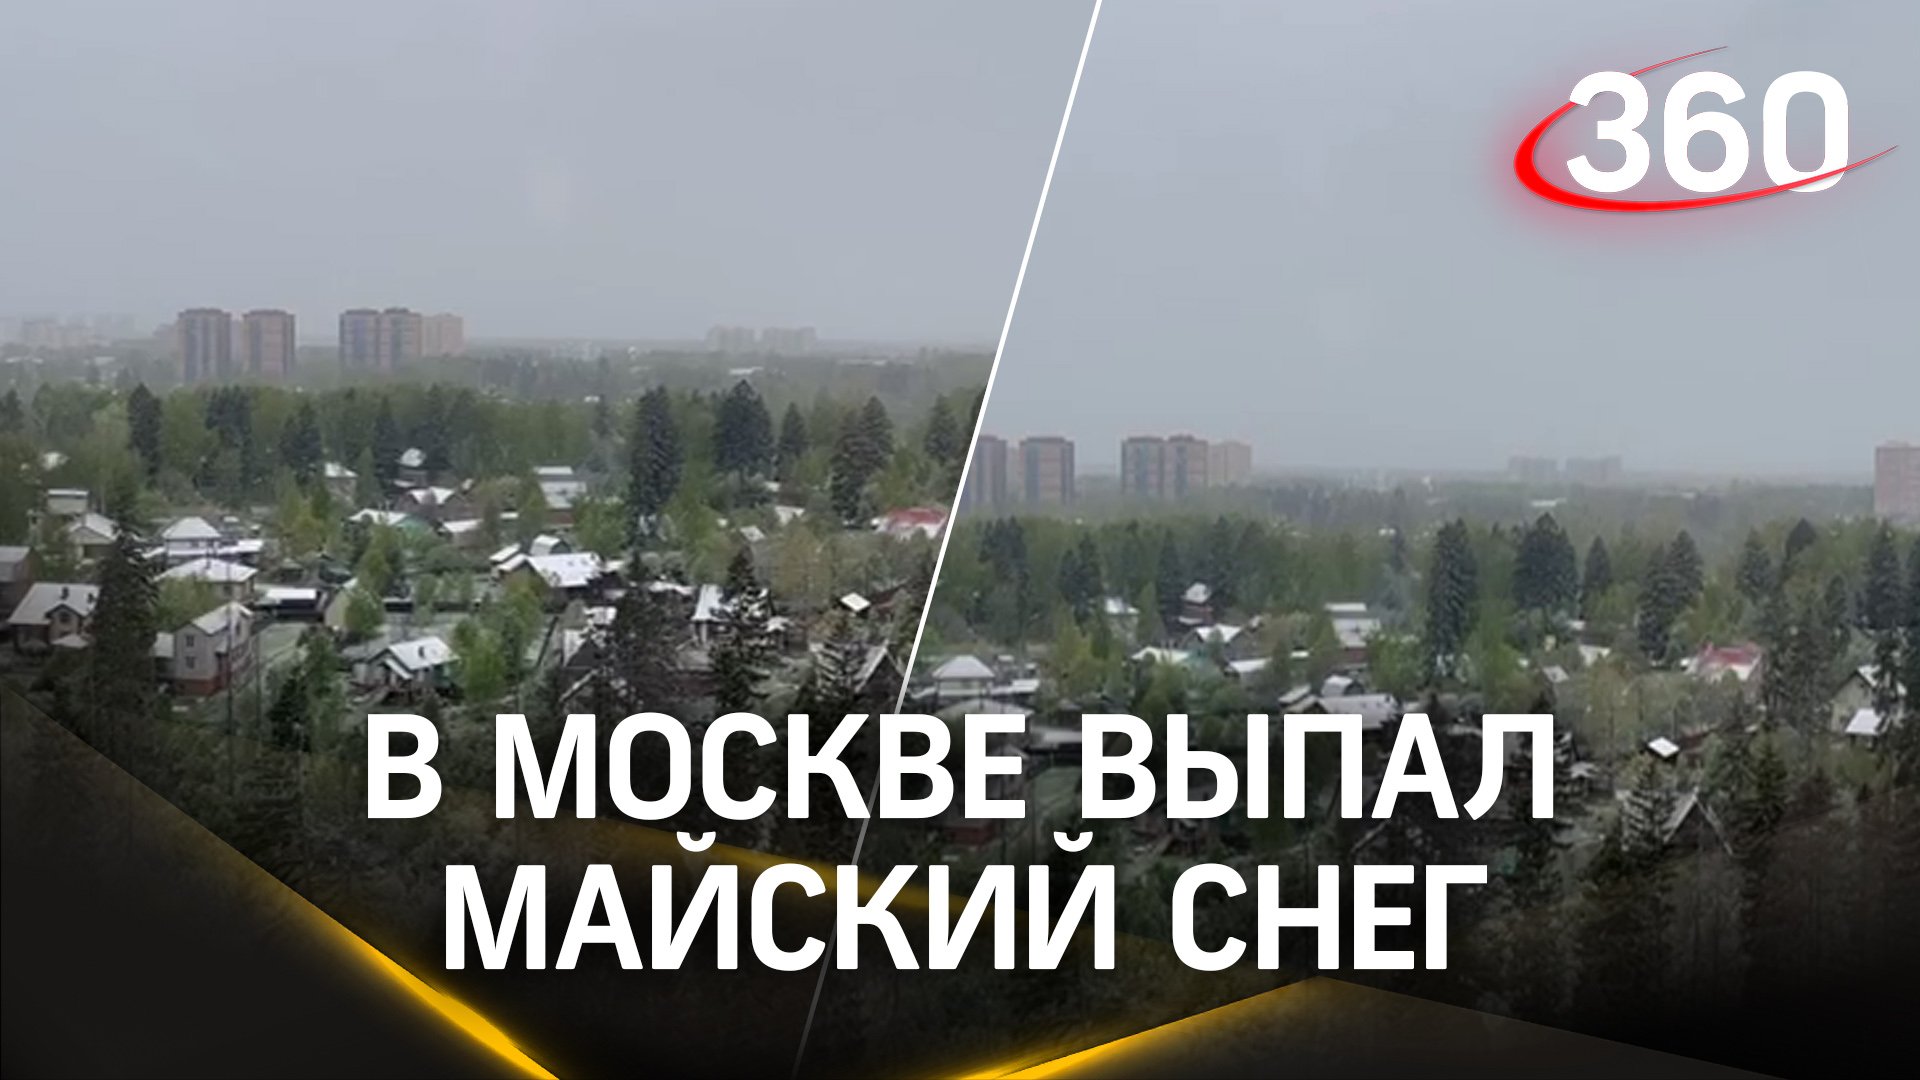 Нормально так снежит в Москве и Подмосковье. А у вас какая погода?